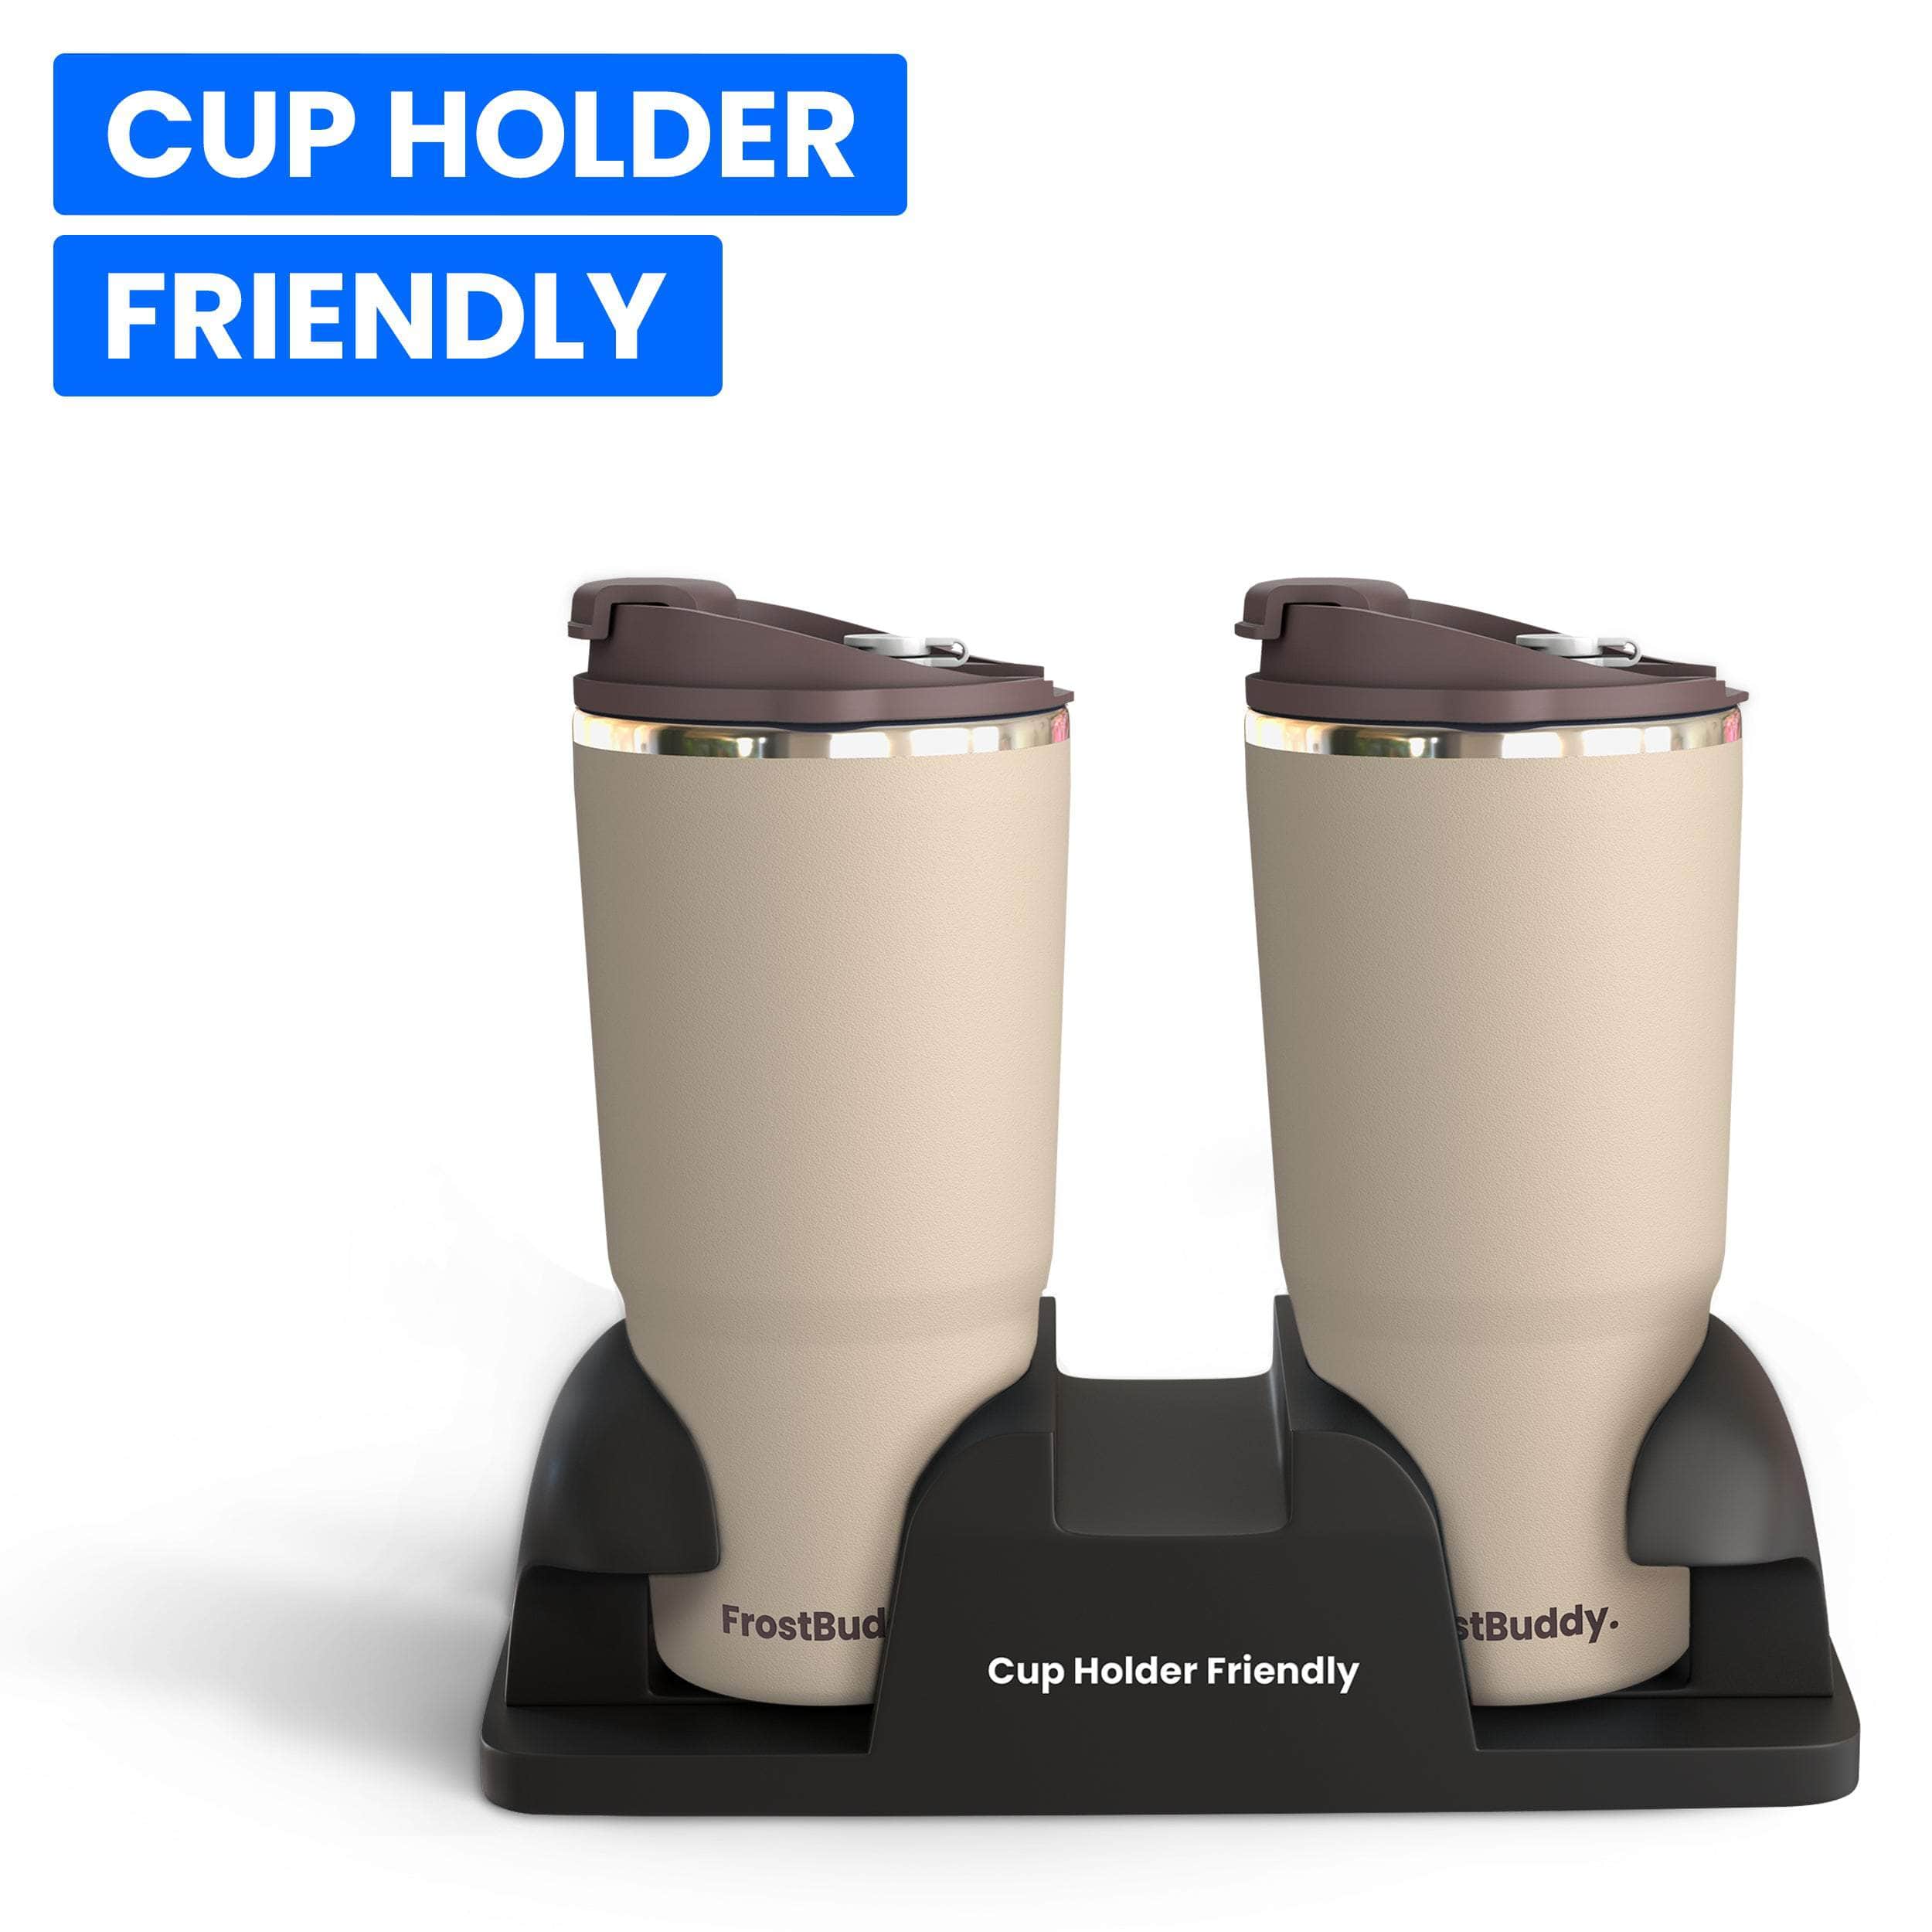 To-Go Buddy, Iced Coffee Cup Insulator